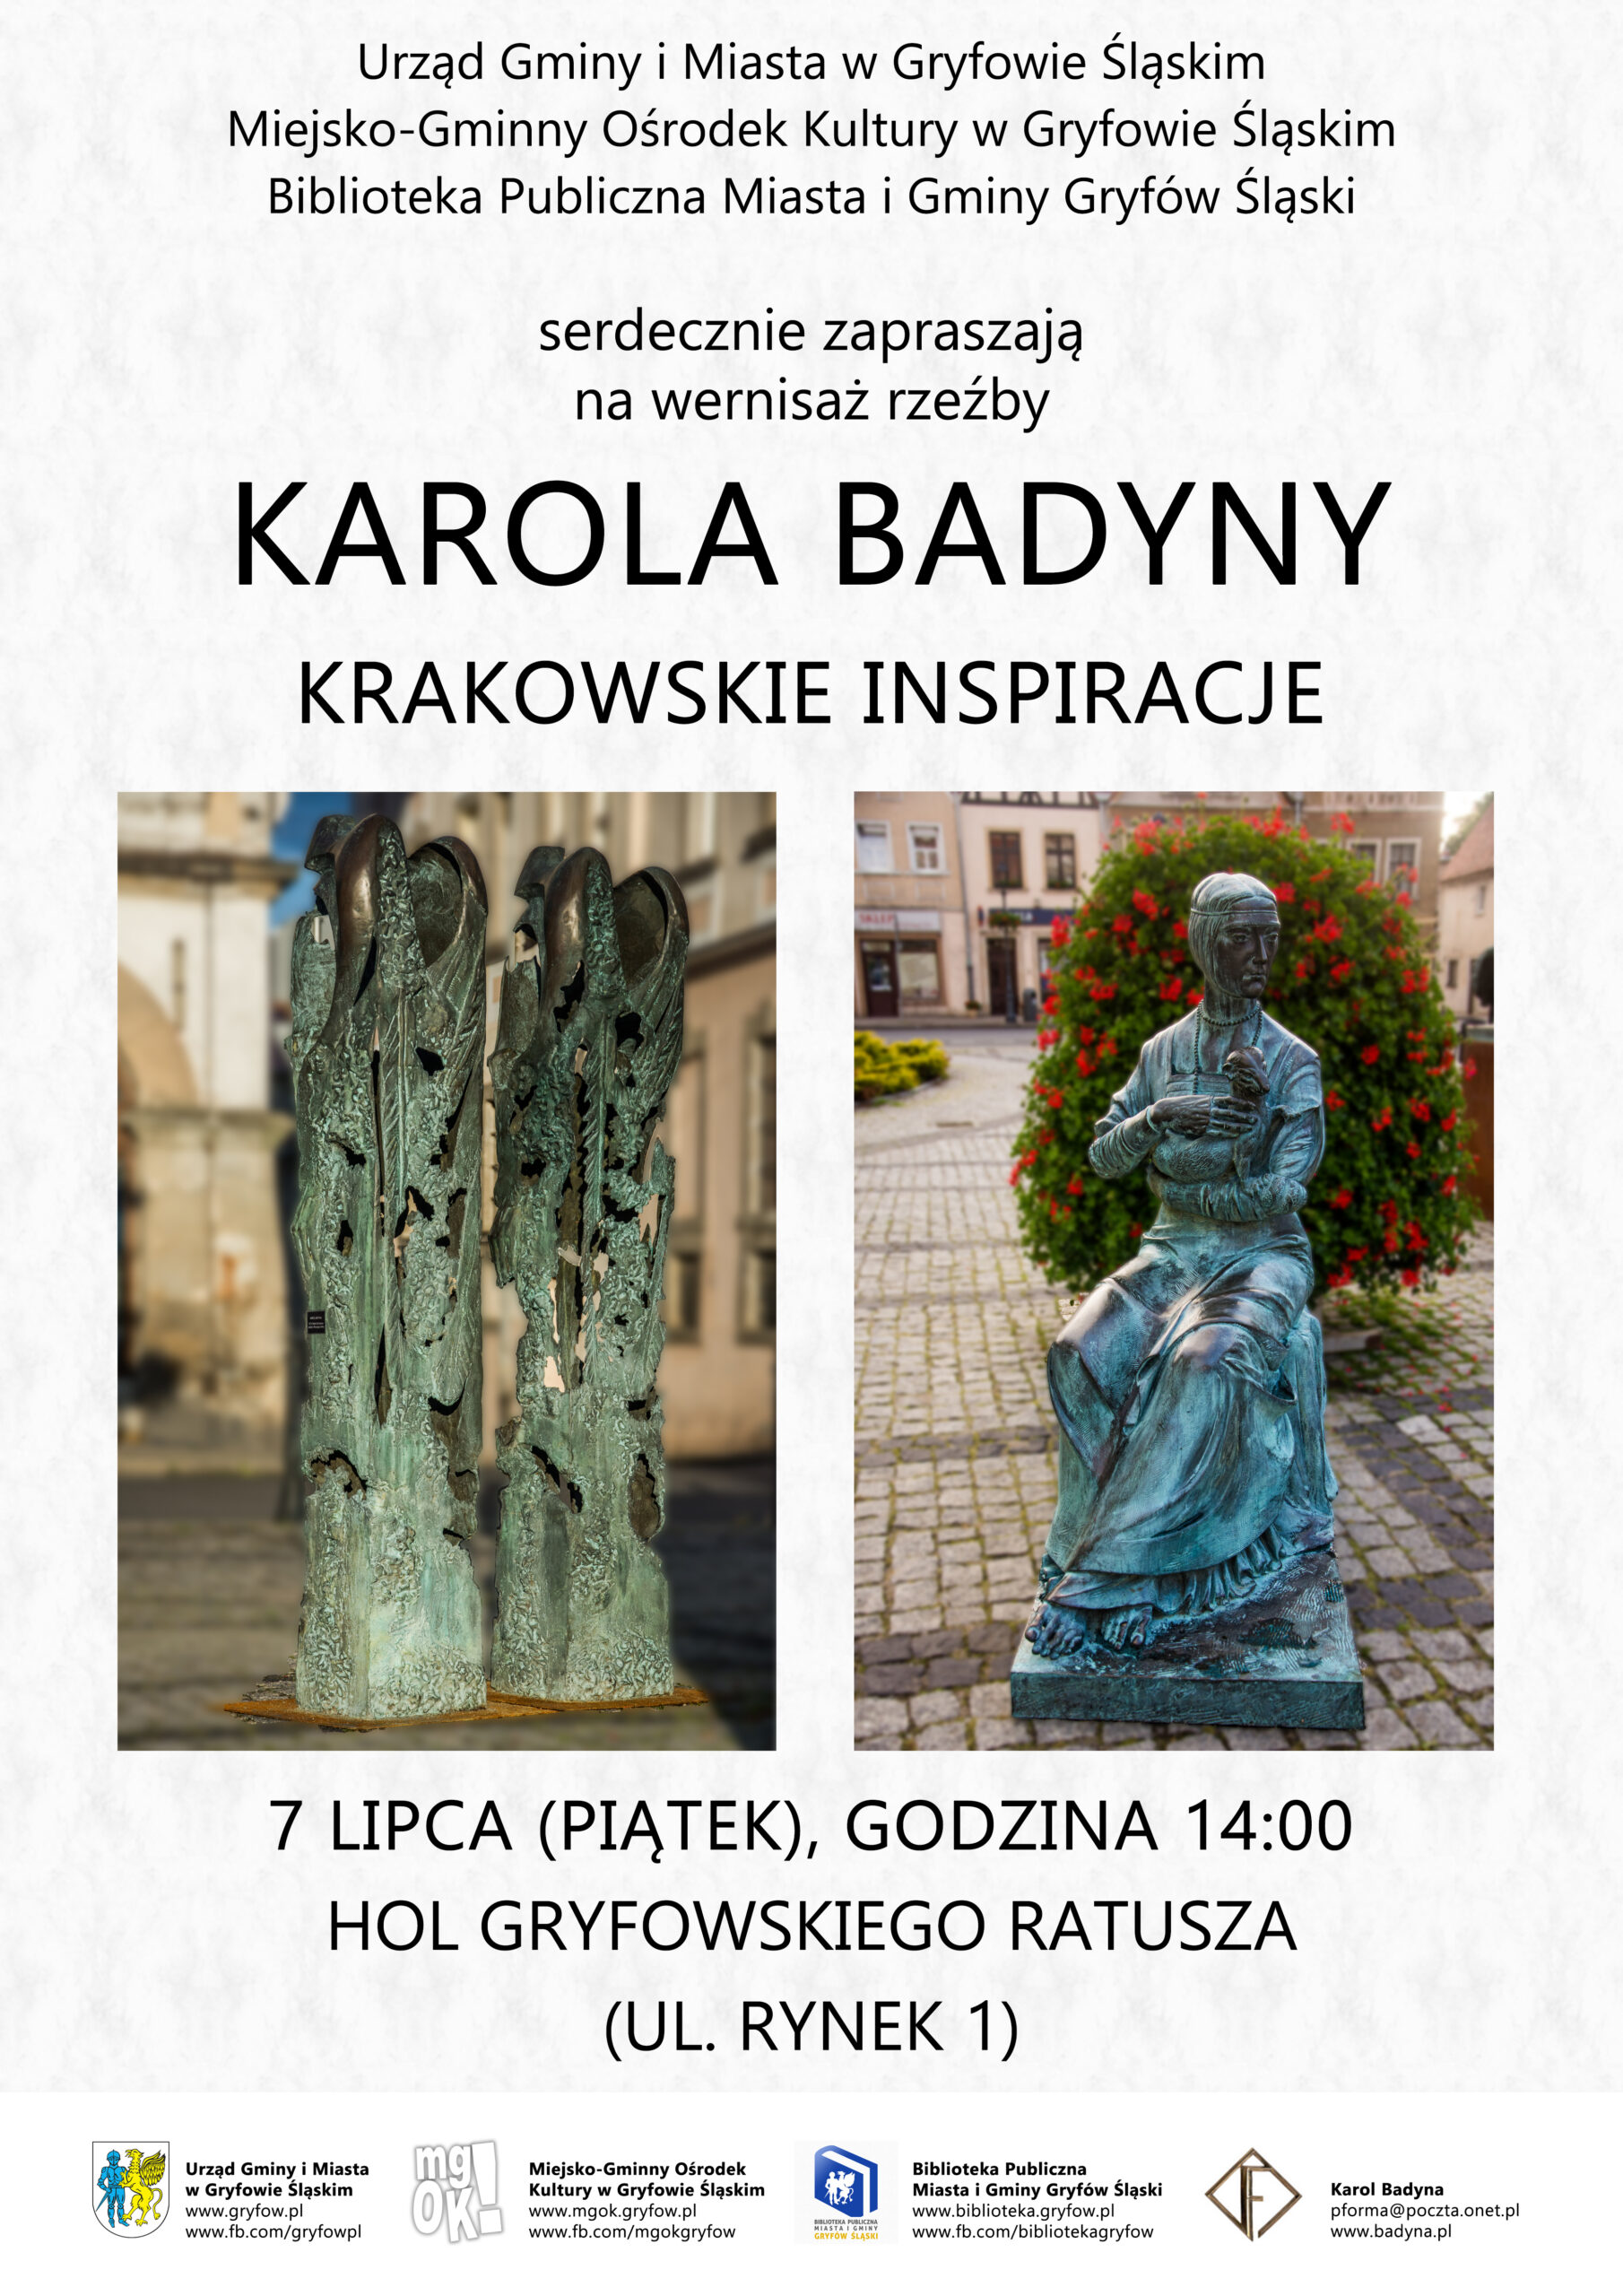 Karola Badyny krakowskie inspiracje.